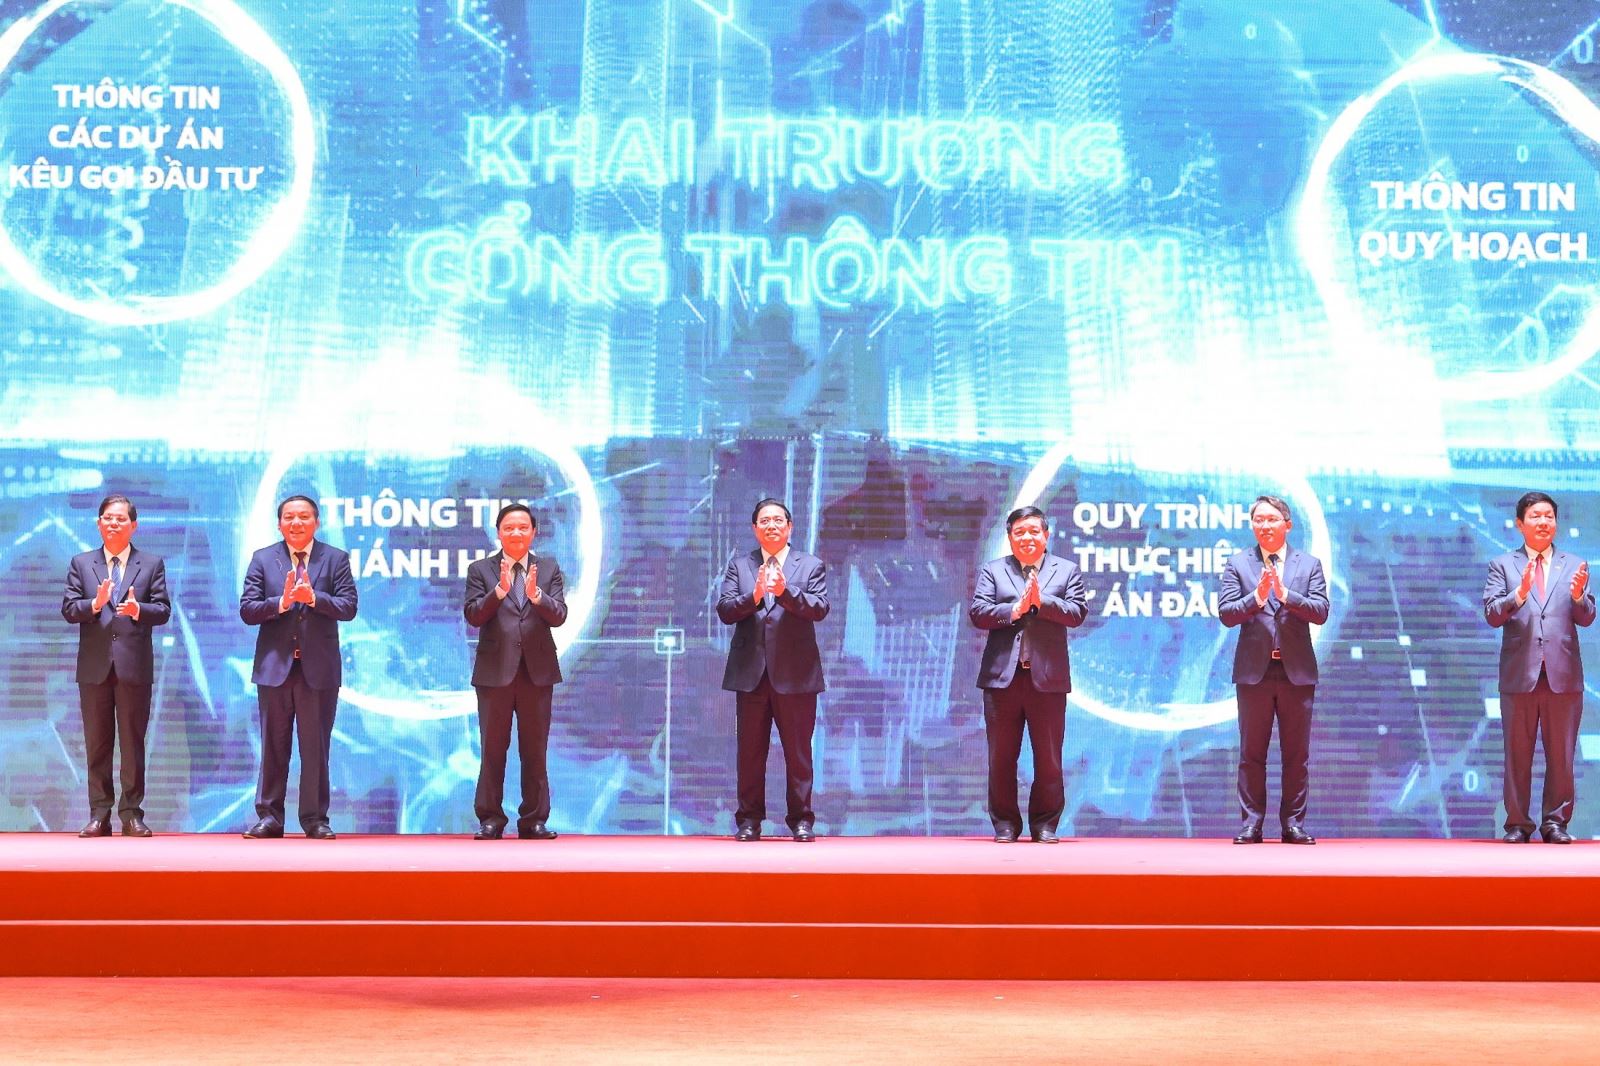 Thủ tướng Chính phủ Phạm Minh Chính cùng các lãnh đạo Bộ, Uỷ ban Nhân dân tỉnh Khánh Hòa và Chủ tịch Tập đoàn FPT Trương Gia Bình thực hiện nghi thức nhấn nút khai trương Cổng thông xúc tiến đầu tư của tỉnh.